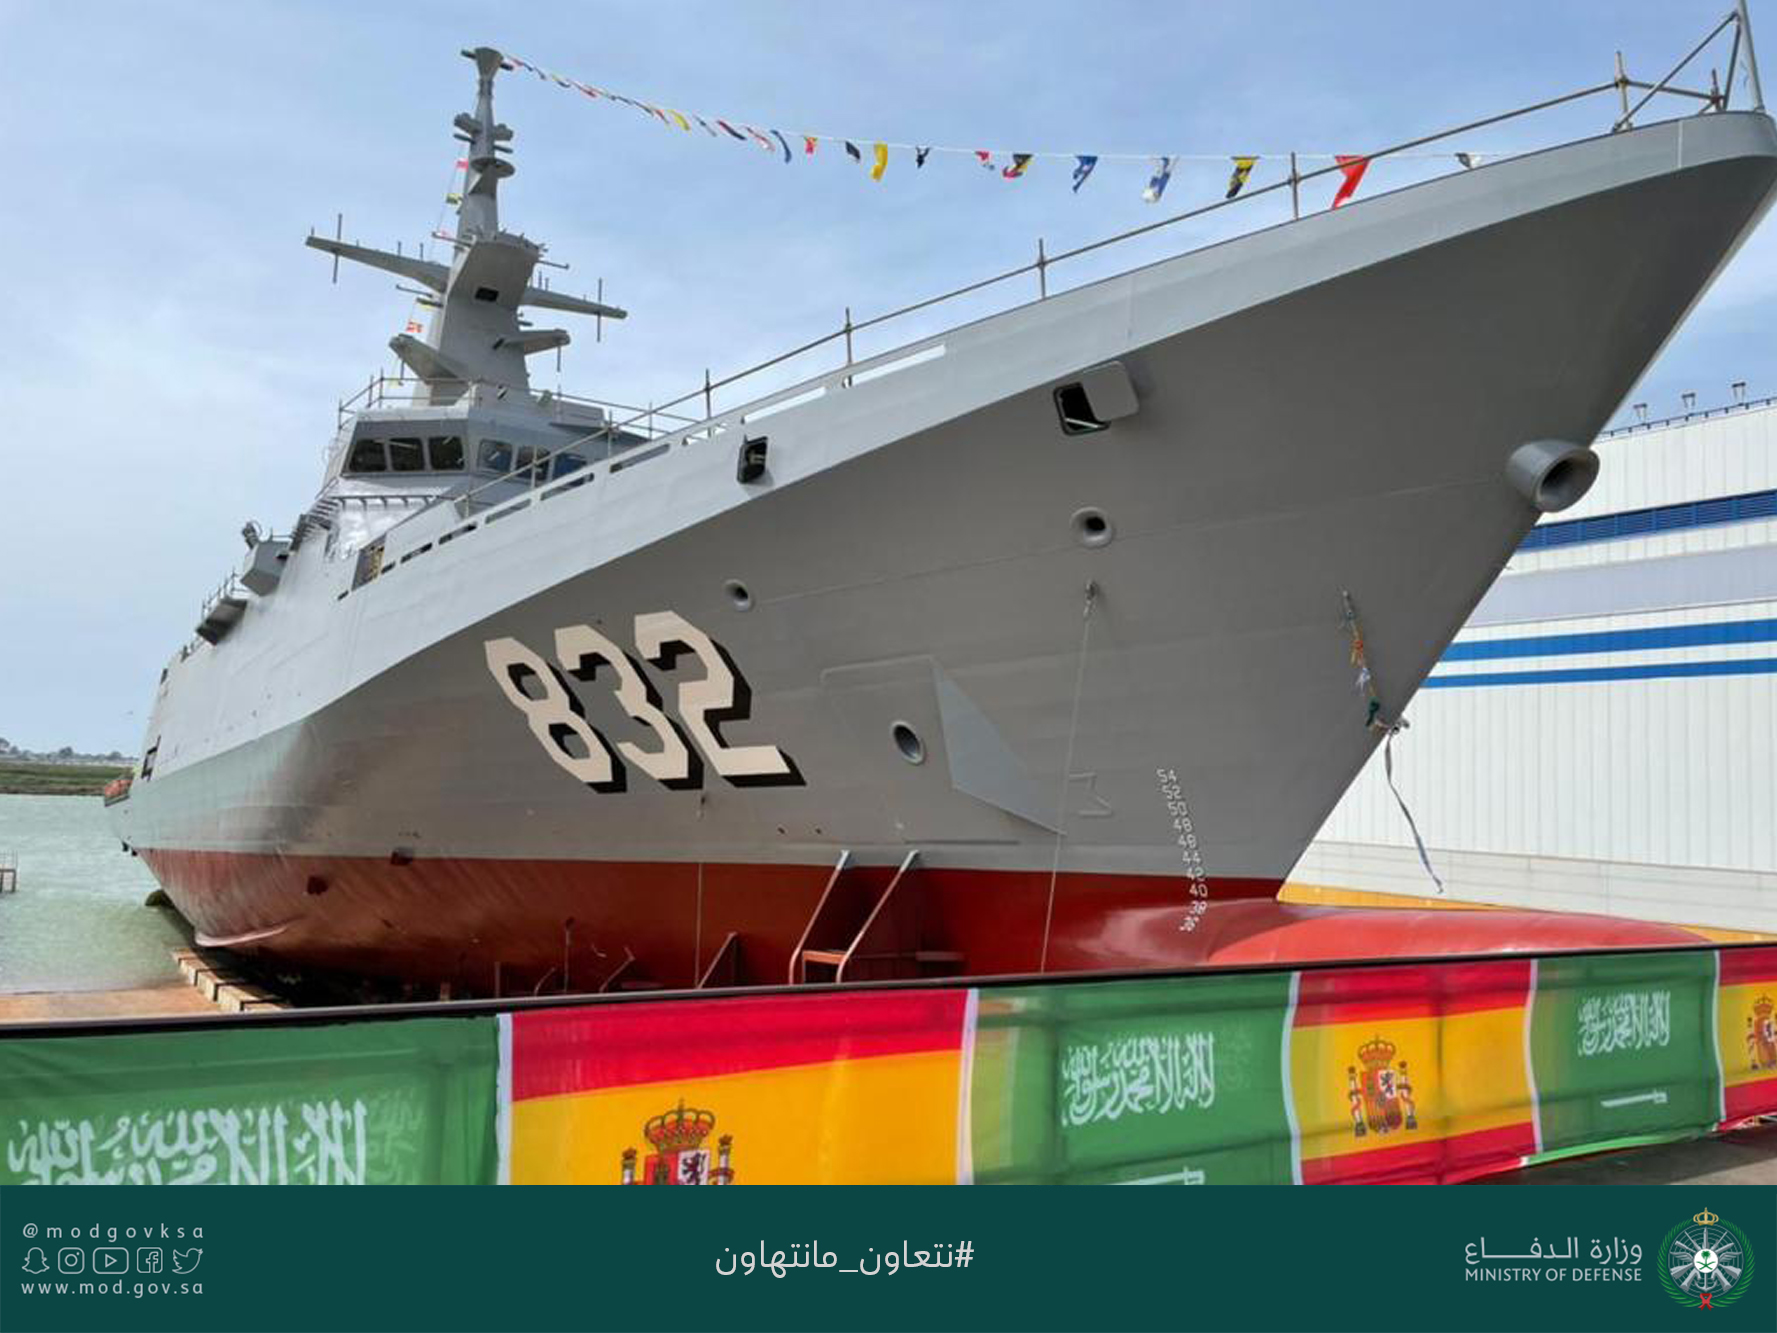 القوات البحرية الملكية السعودية تعّوم سفينة جلالة الملك “حائل”